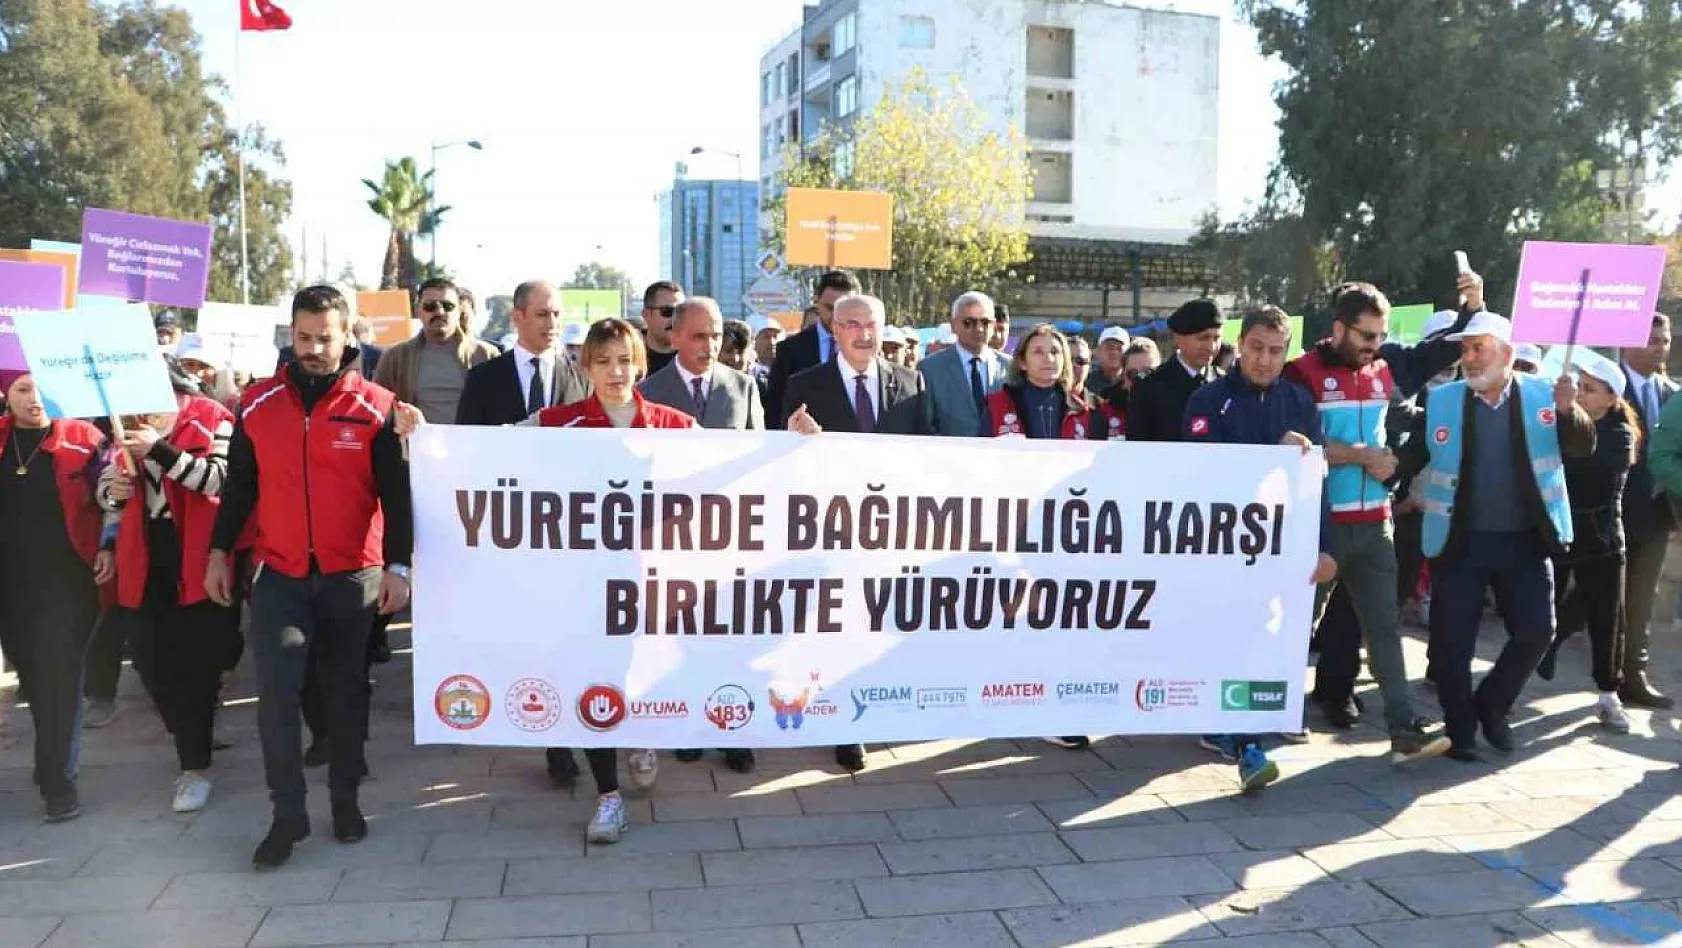 Adana'da 750 kişi bağımlılığa karşı yürüdü